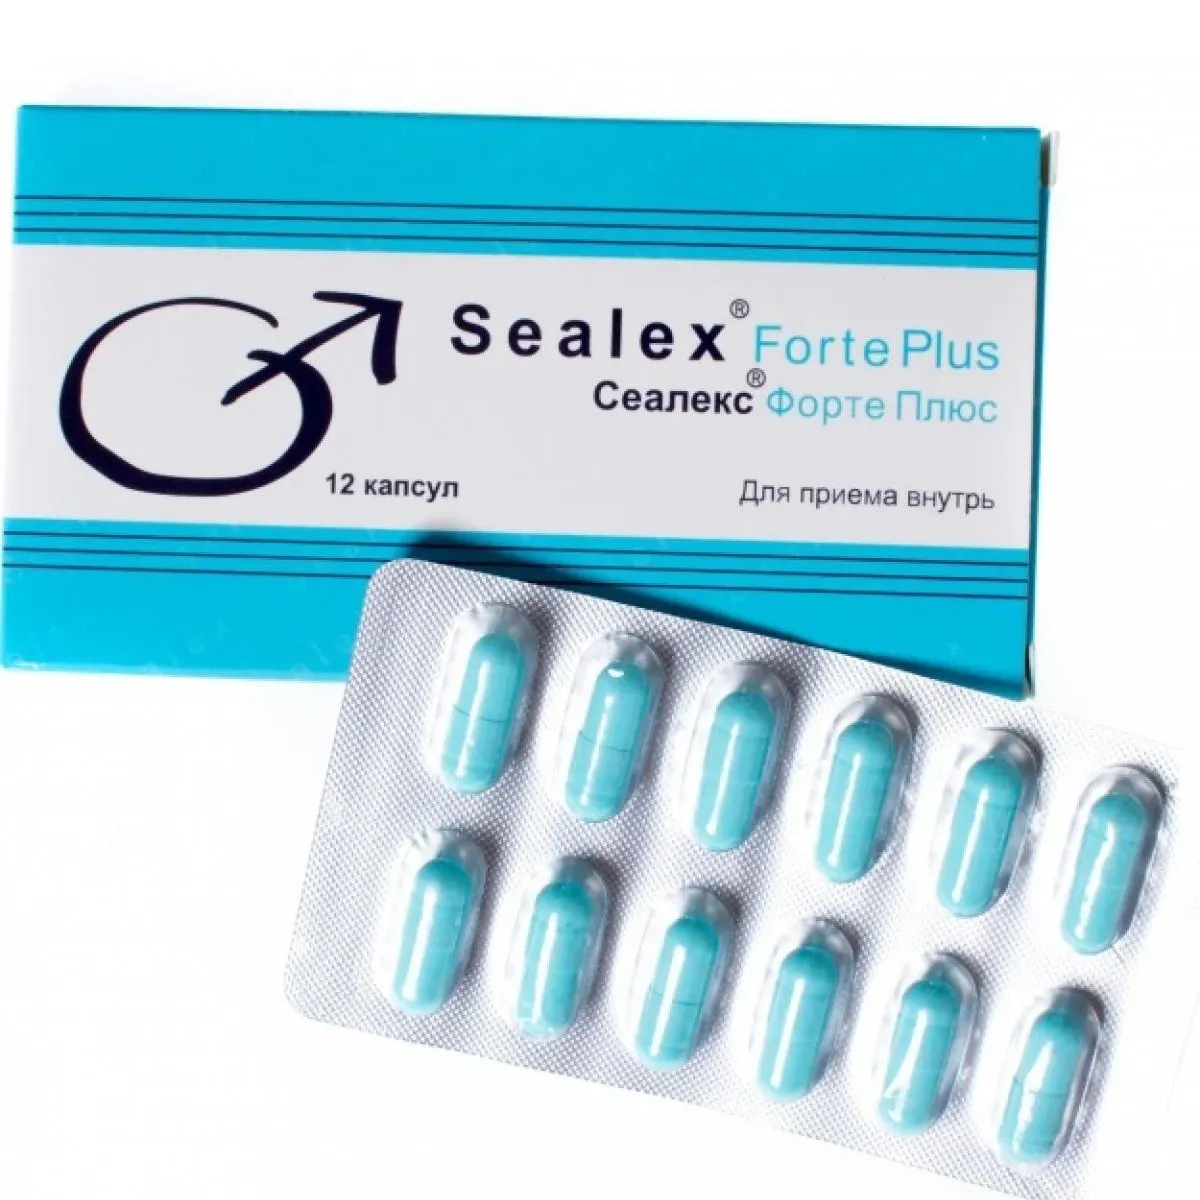 Sealex Forte Plus erkaklar uchun kuchli tabletkalar#1